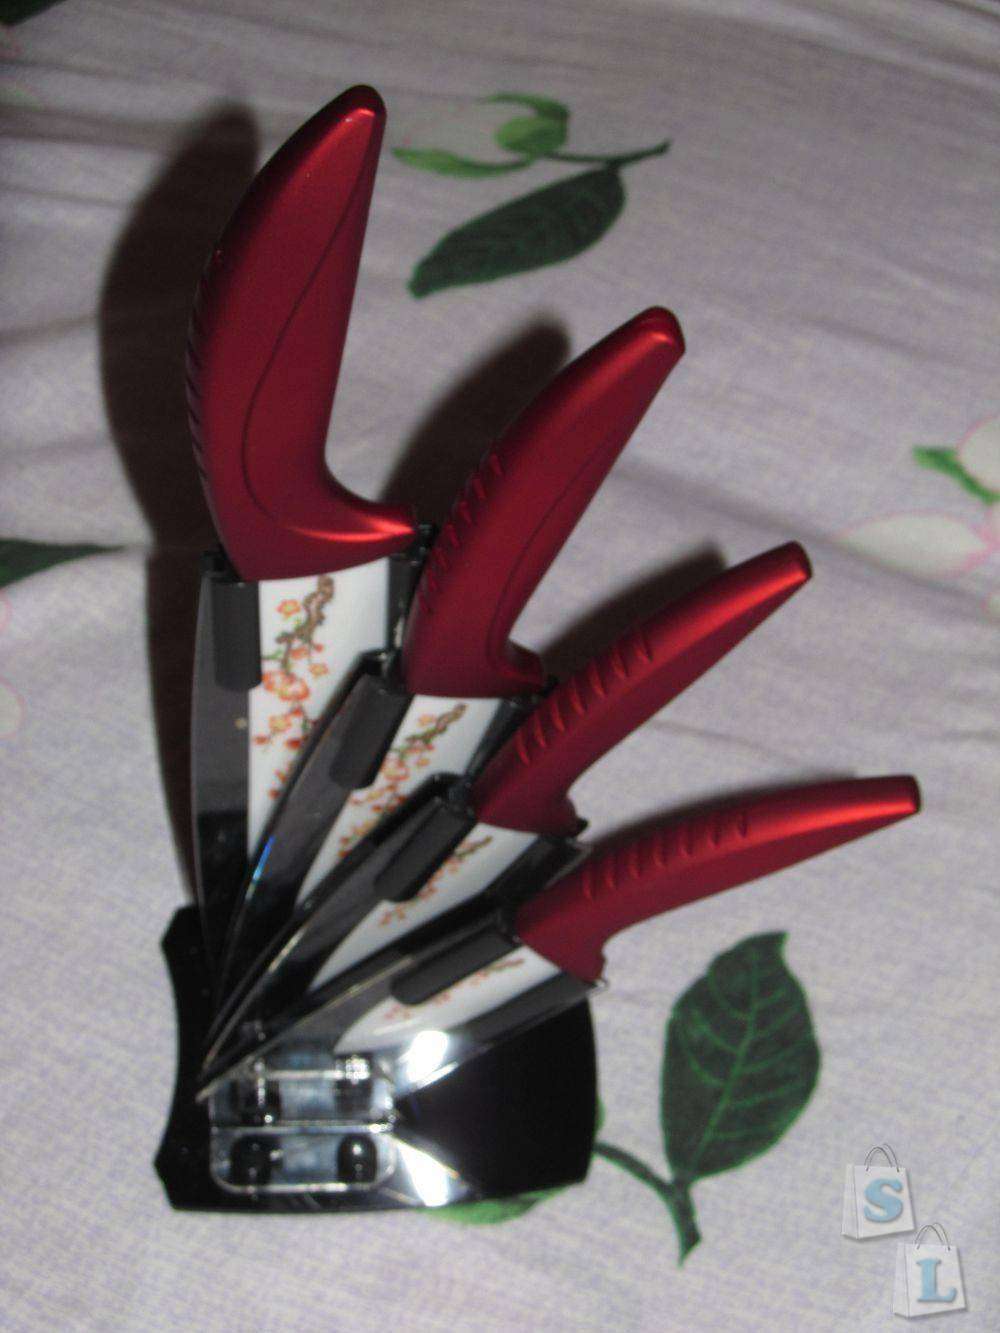 Banggood: Красивые керамические ножи на подставке